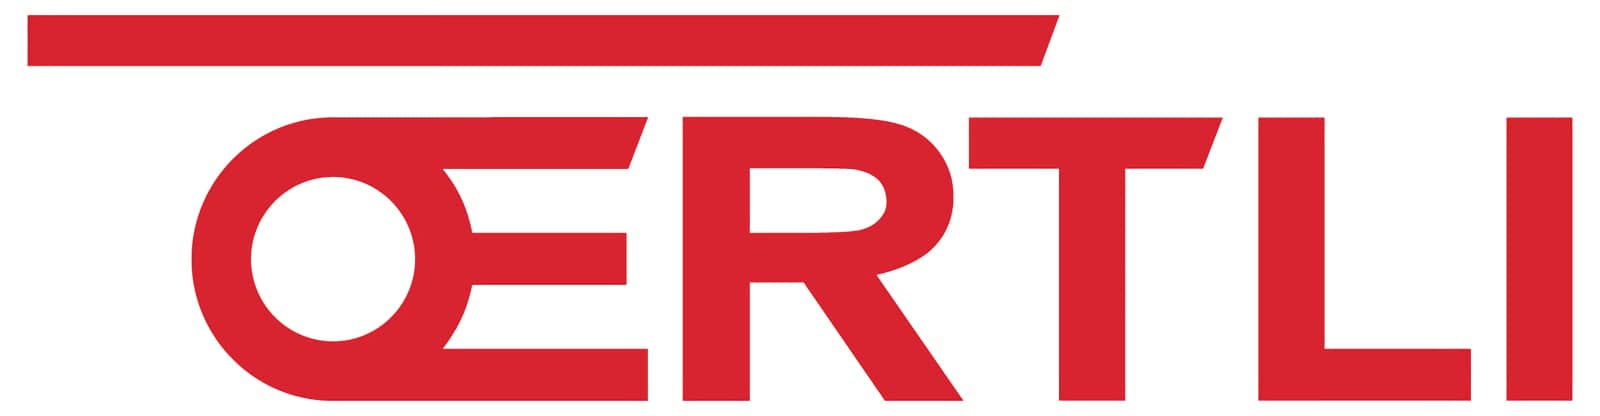 Oertli-logo